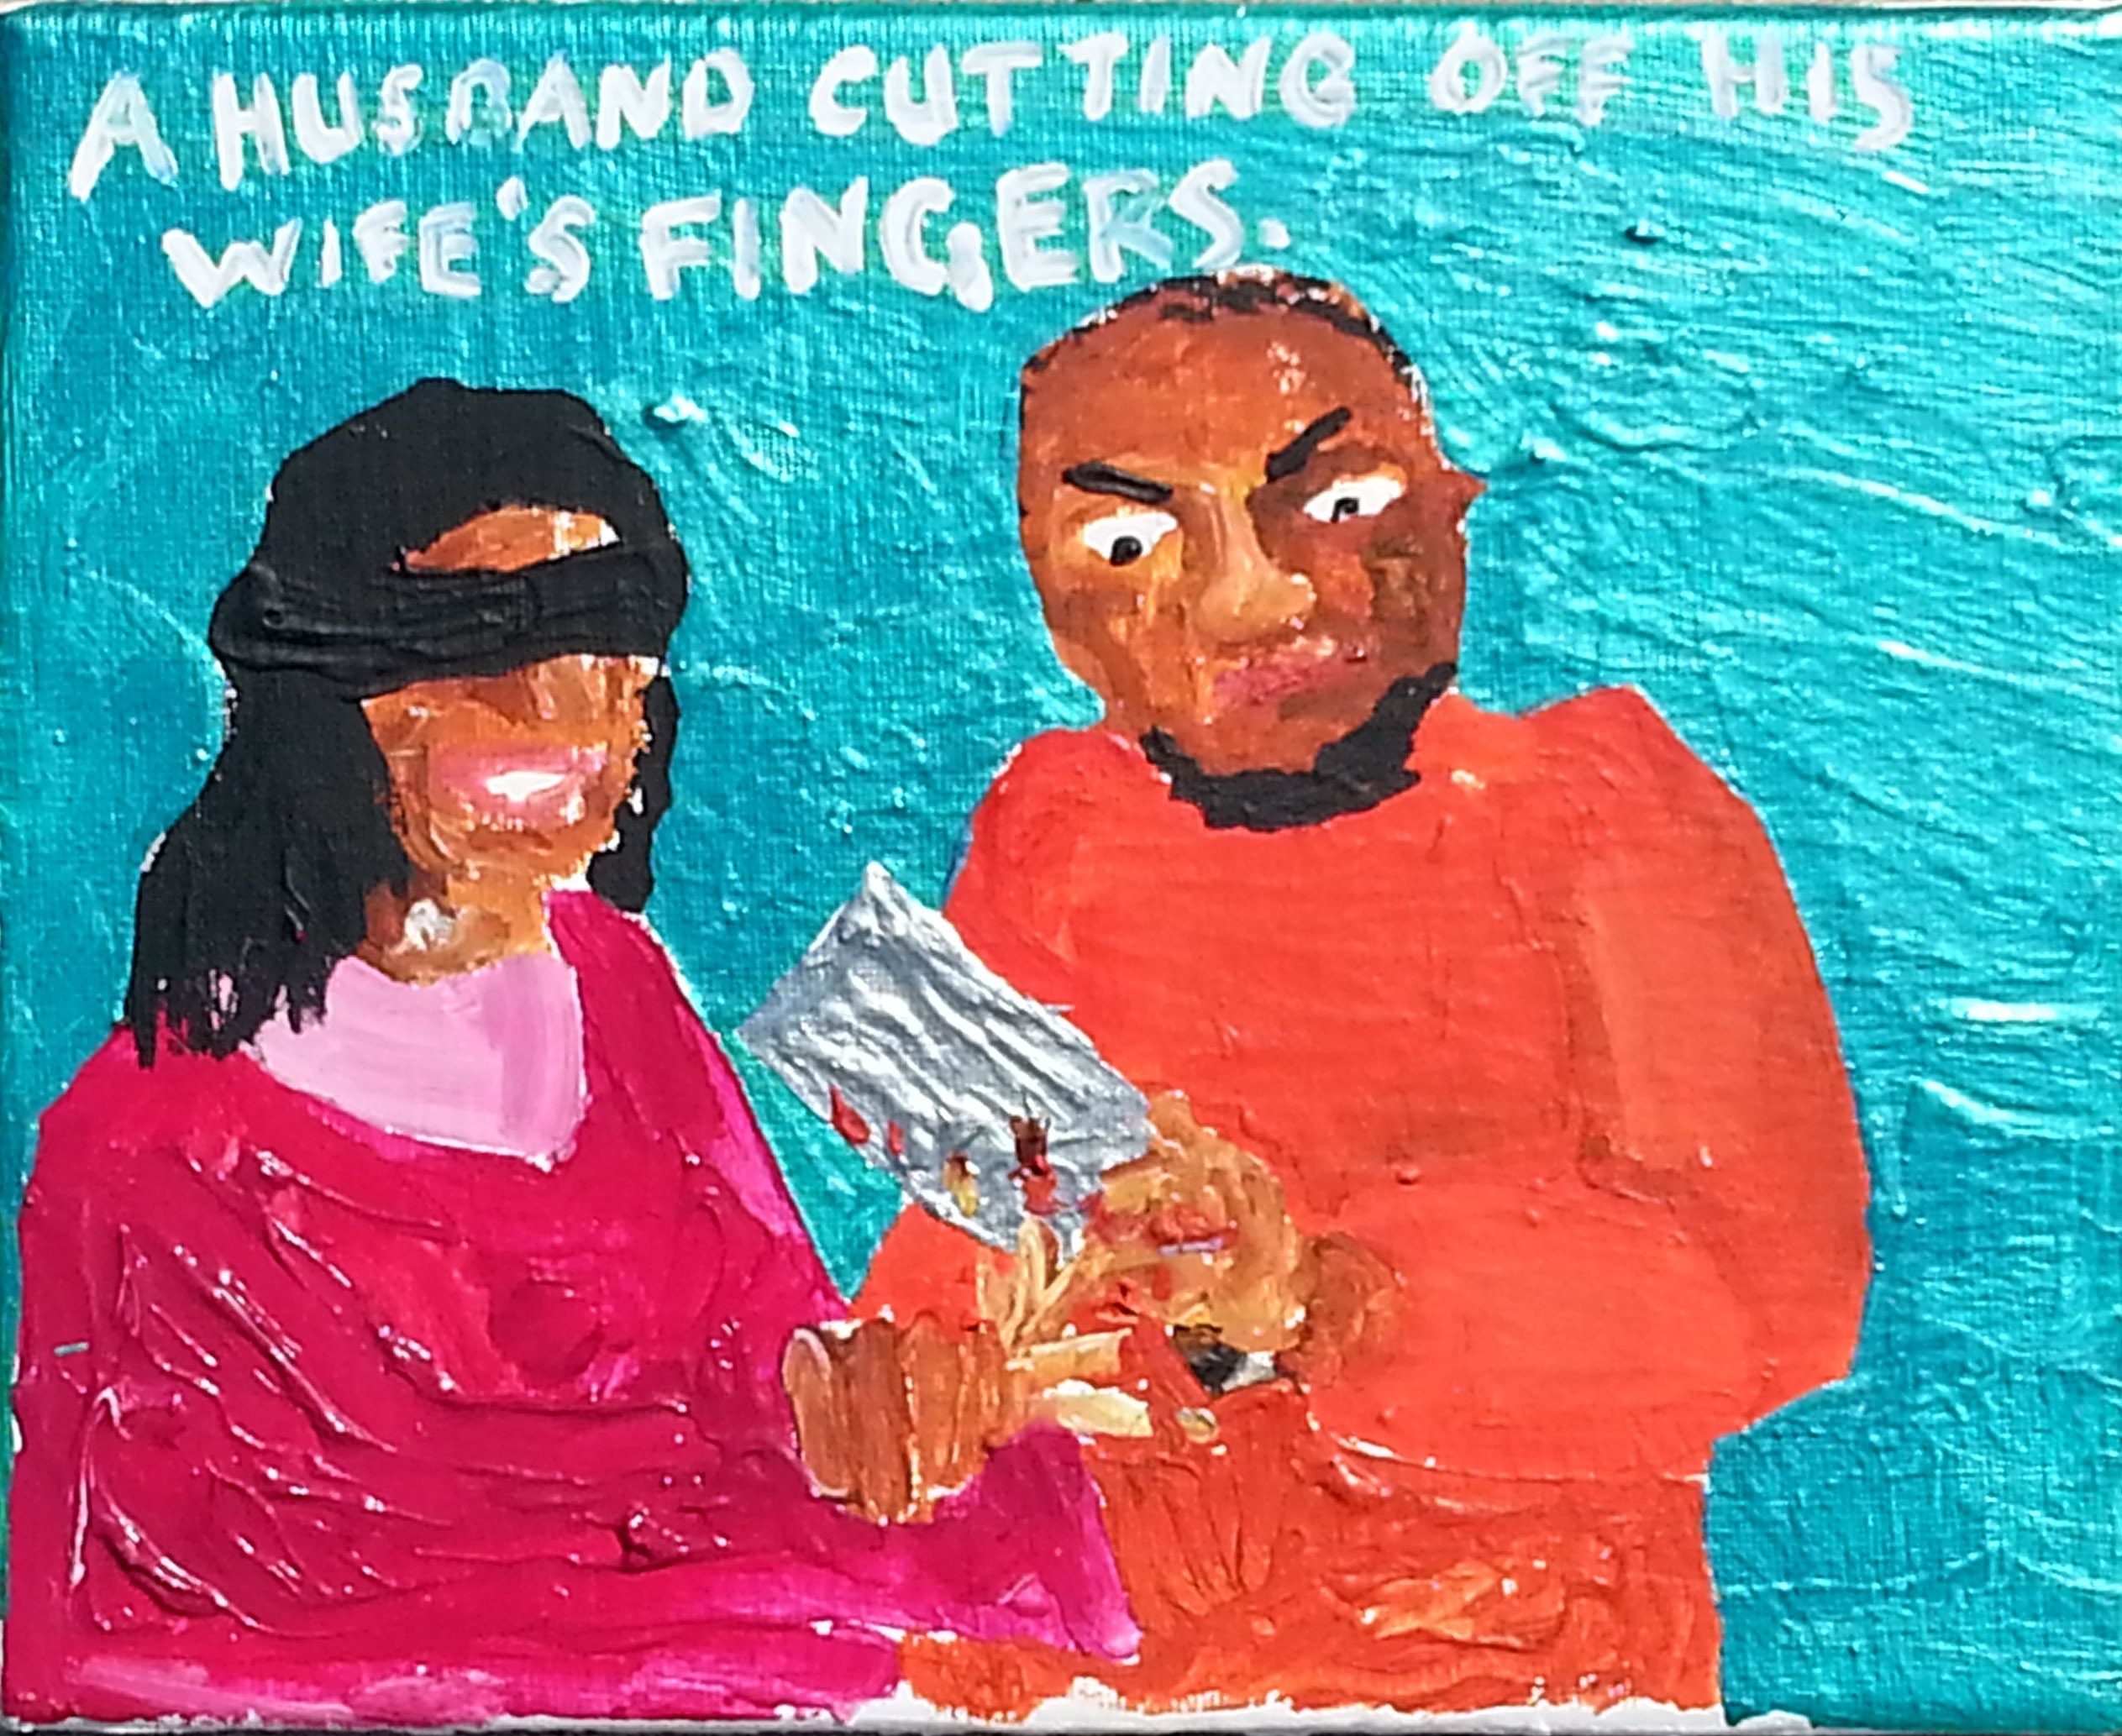 Wife Finger